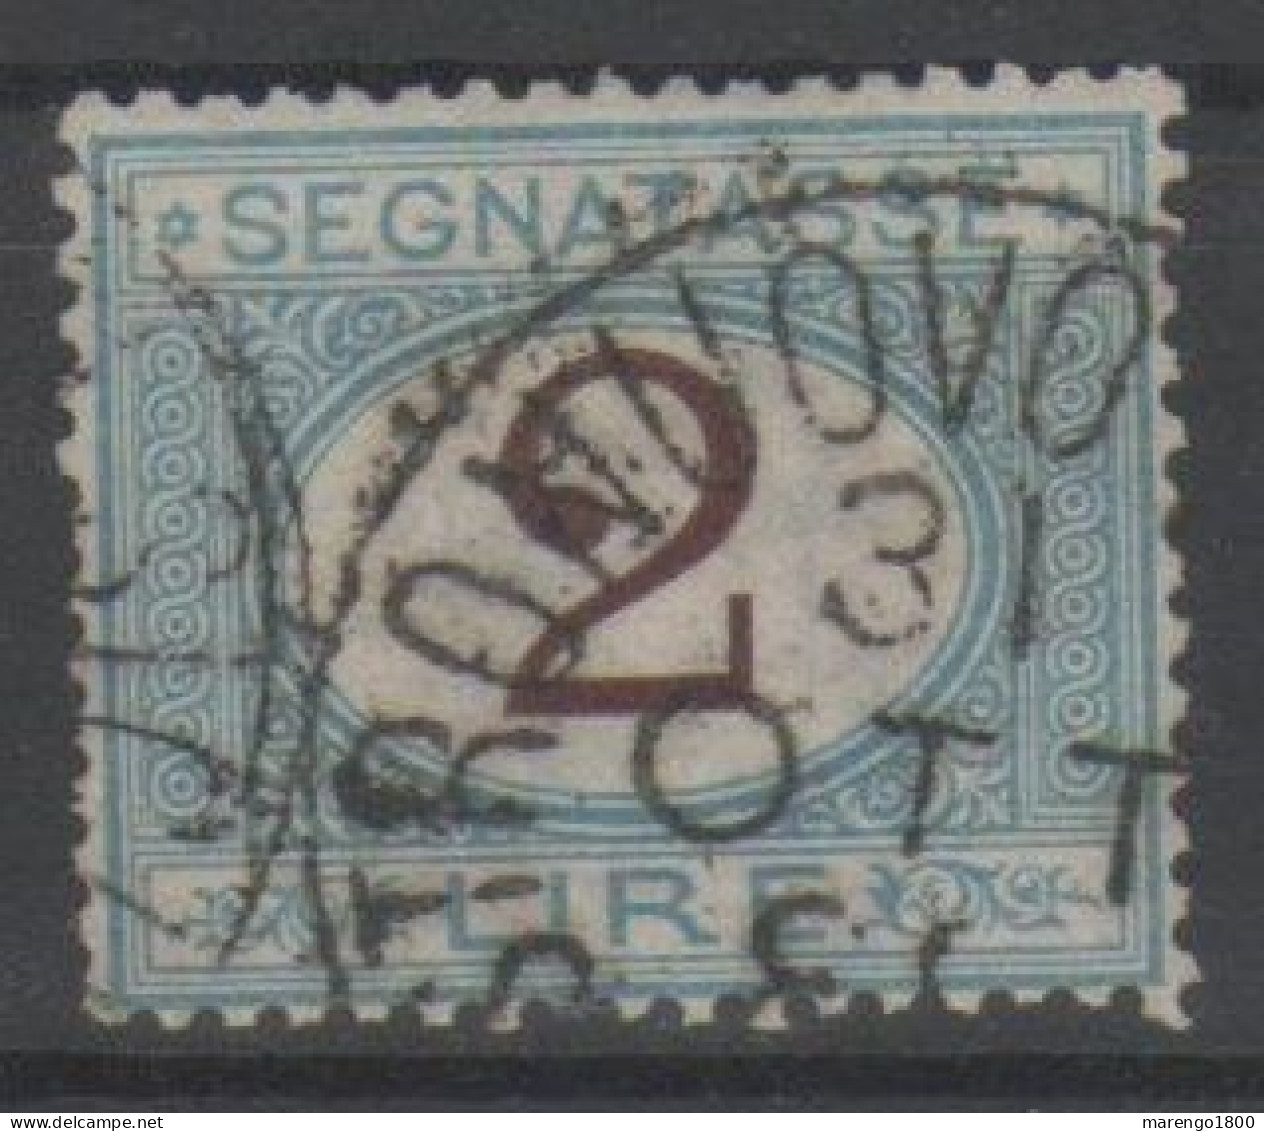 ITALIA 1870 - Segnatasse 2 L. - Postage Due